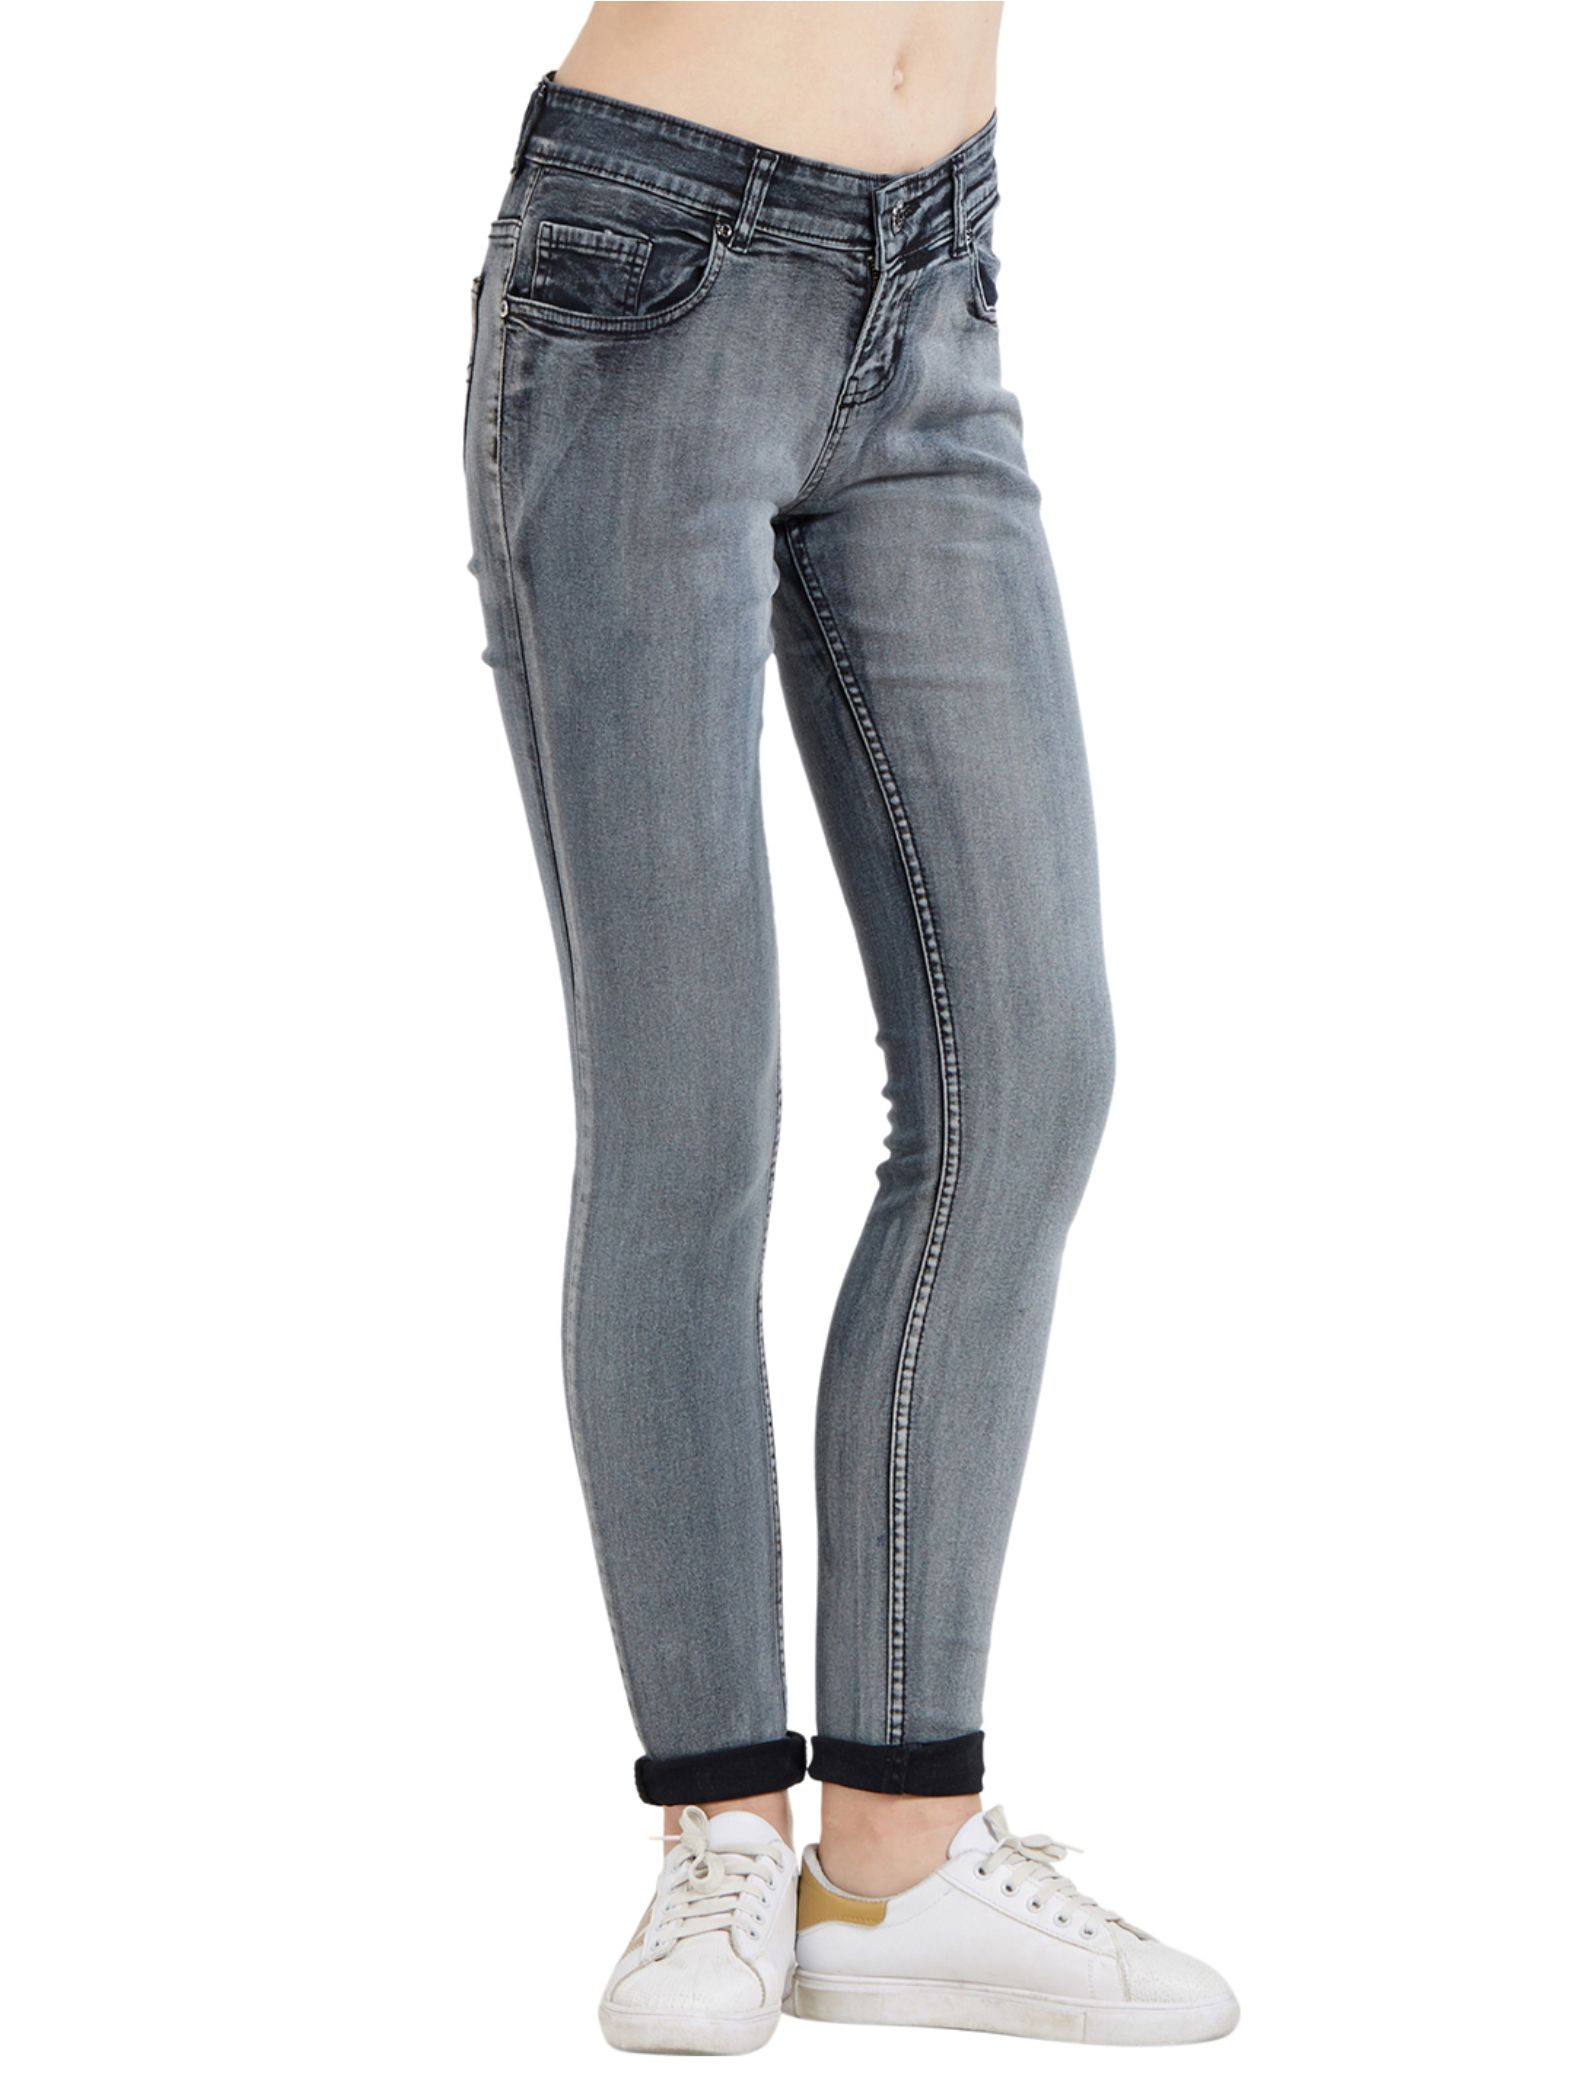 Blancz Denim Jeans - Grey - Buy Blancz Denim Jeans - Grey Online at ...